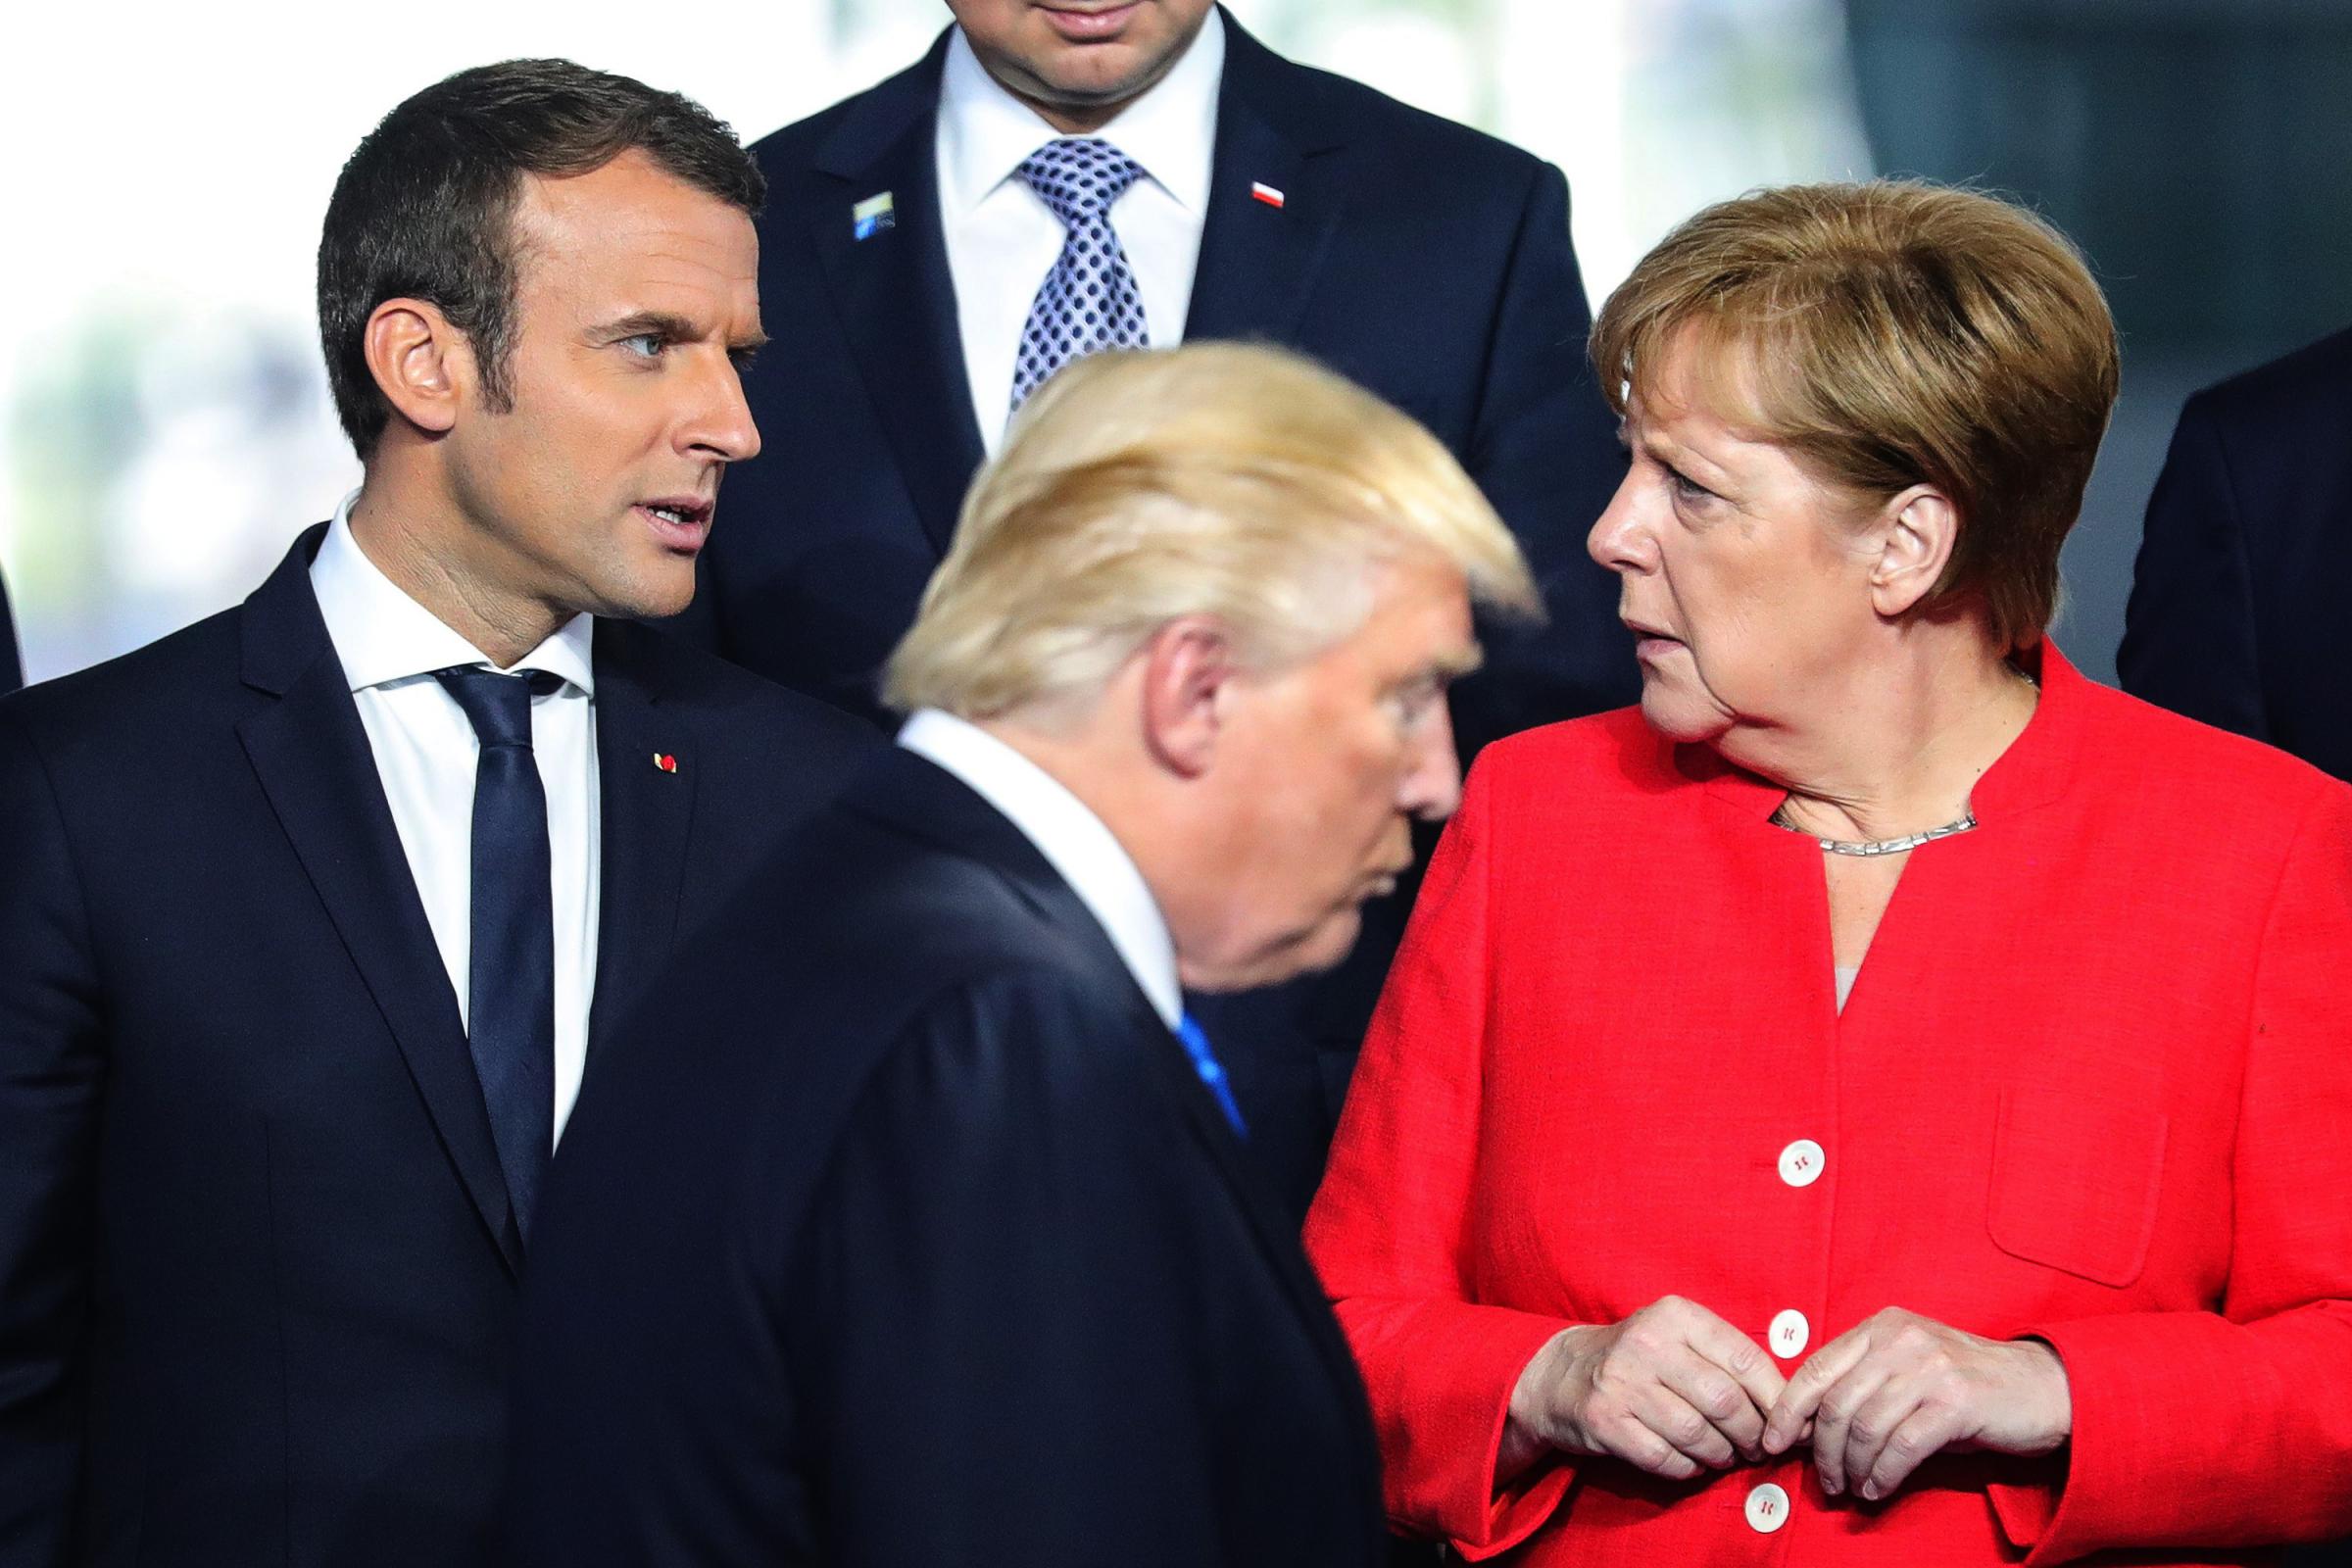 Francoski predsednik Macron ter nemška kanclerka Merkel se ne strinjata s potezami Ameriškega predsednika Trumpa